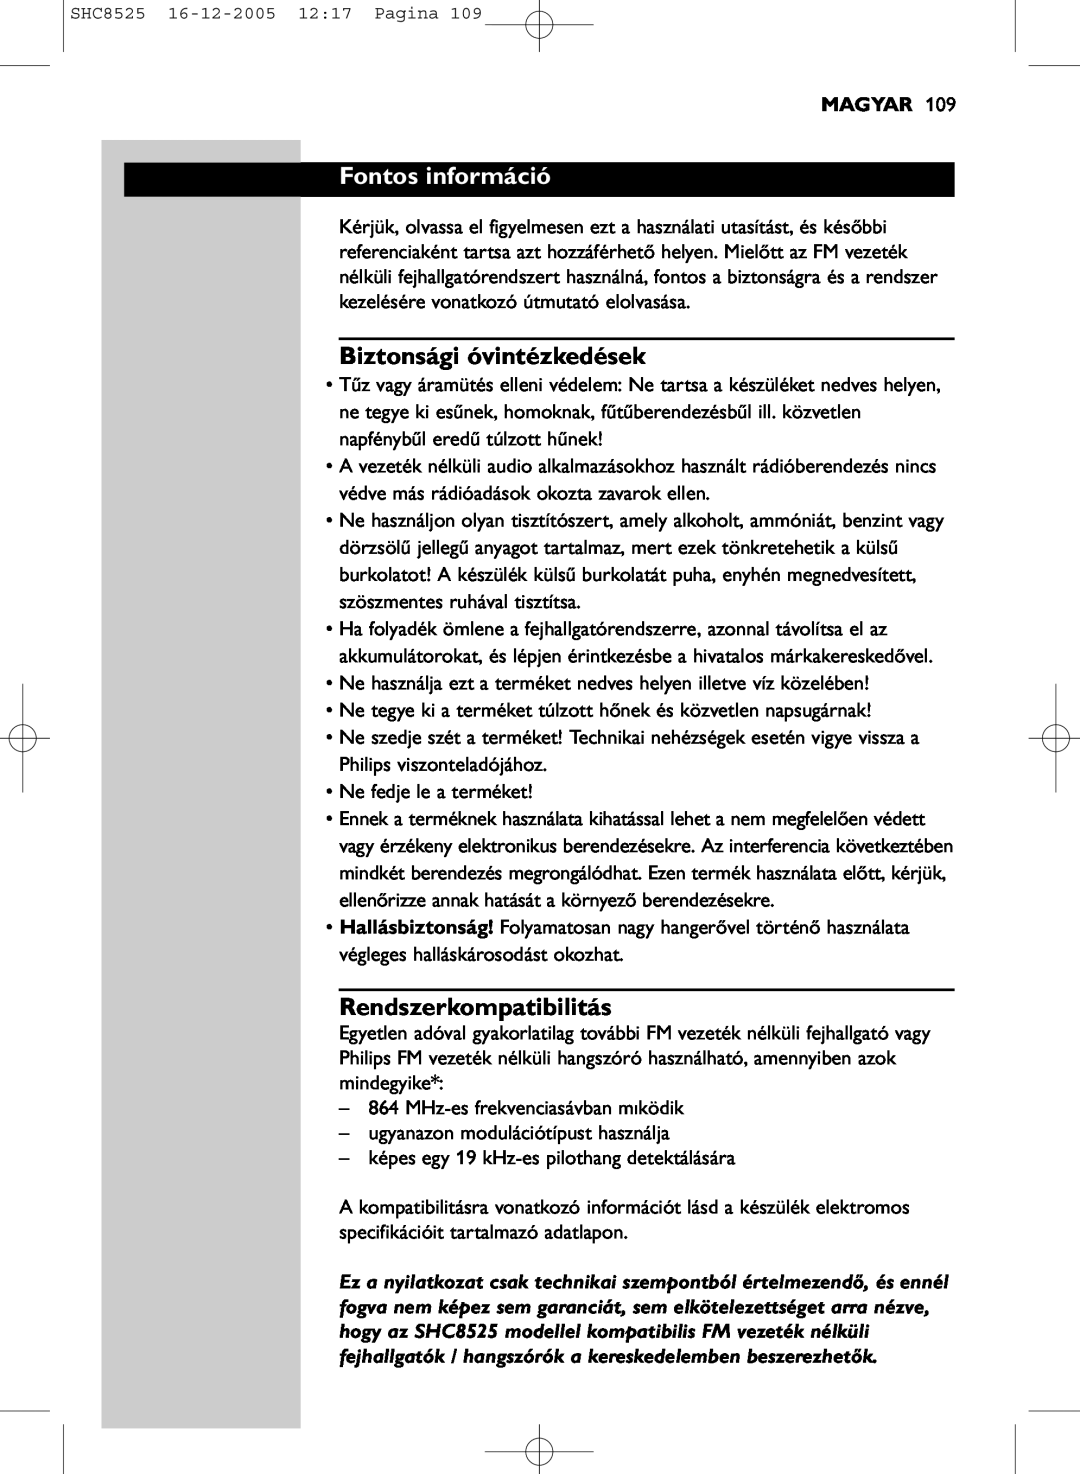 Event electronic SHC8525 manual Fontos információ, Biztonsági óvintézkedések, Rendszerkompatibilitás, Magyar 